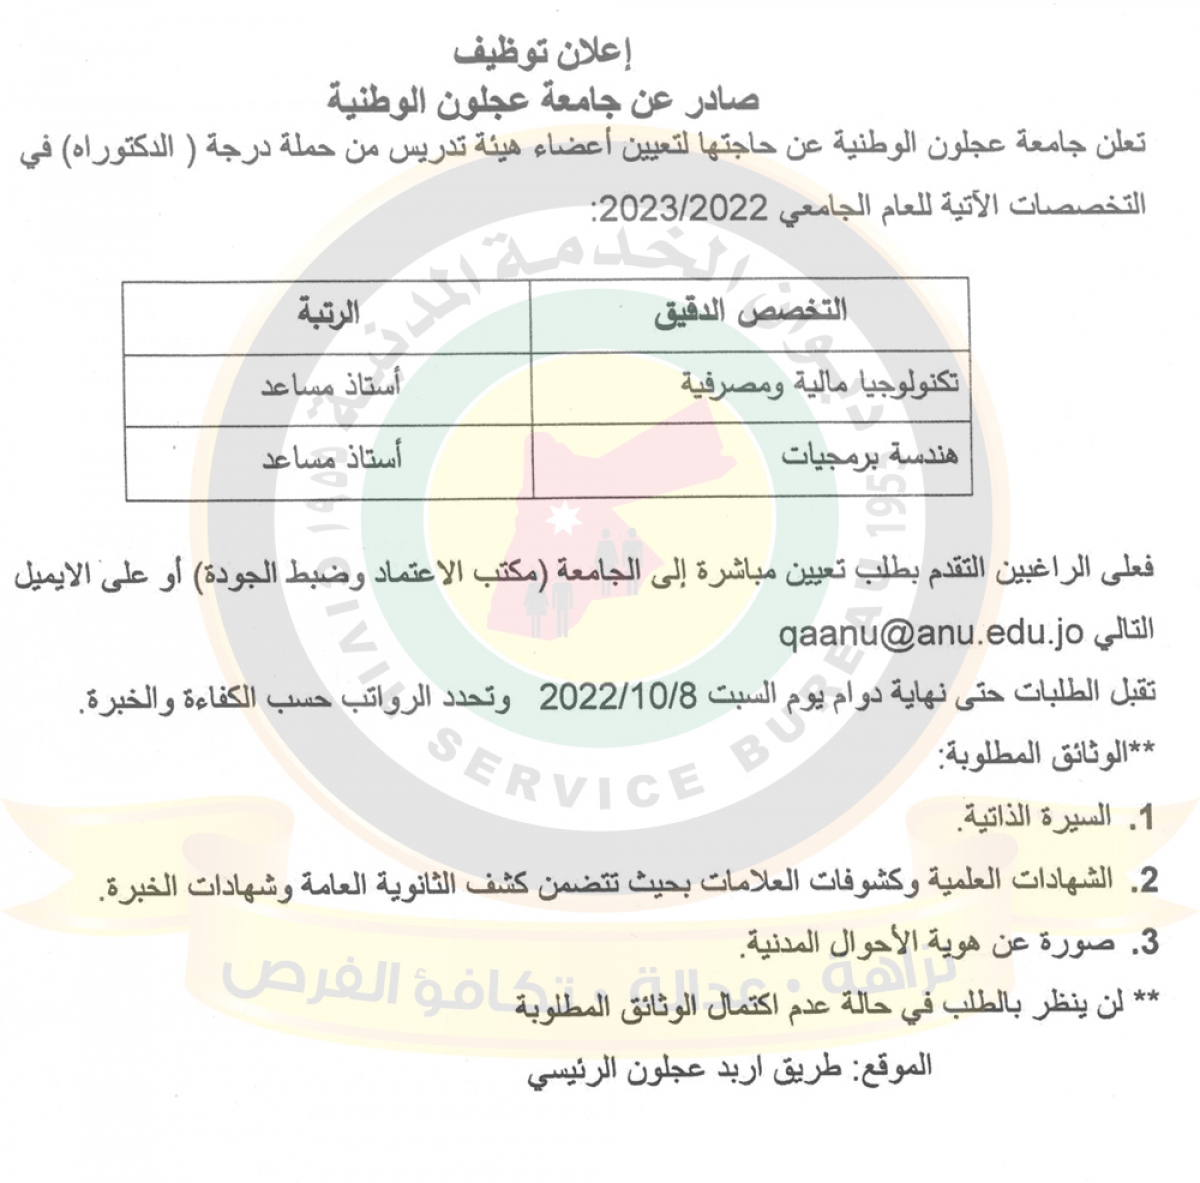 اعلان وظائف شاغرة لتعيين أعضاء هيئة تدريس صادر عن جامعة عجلون الوطنية